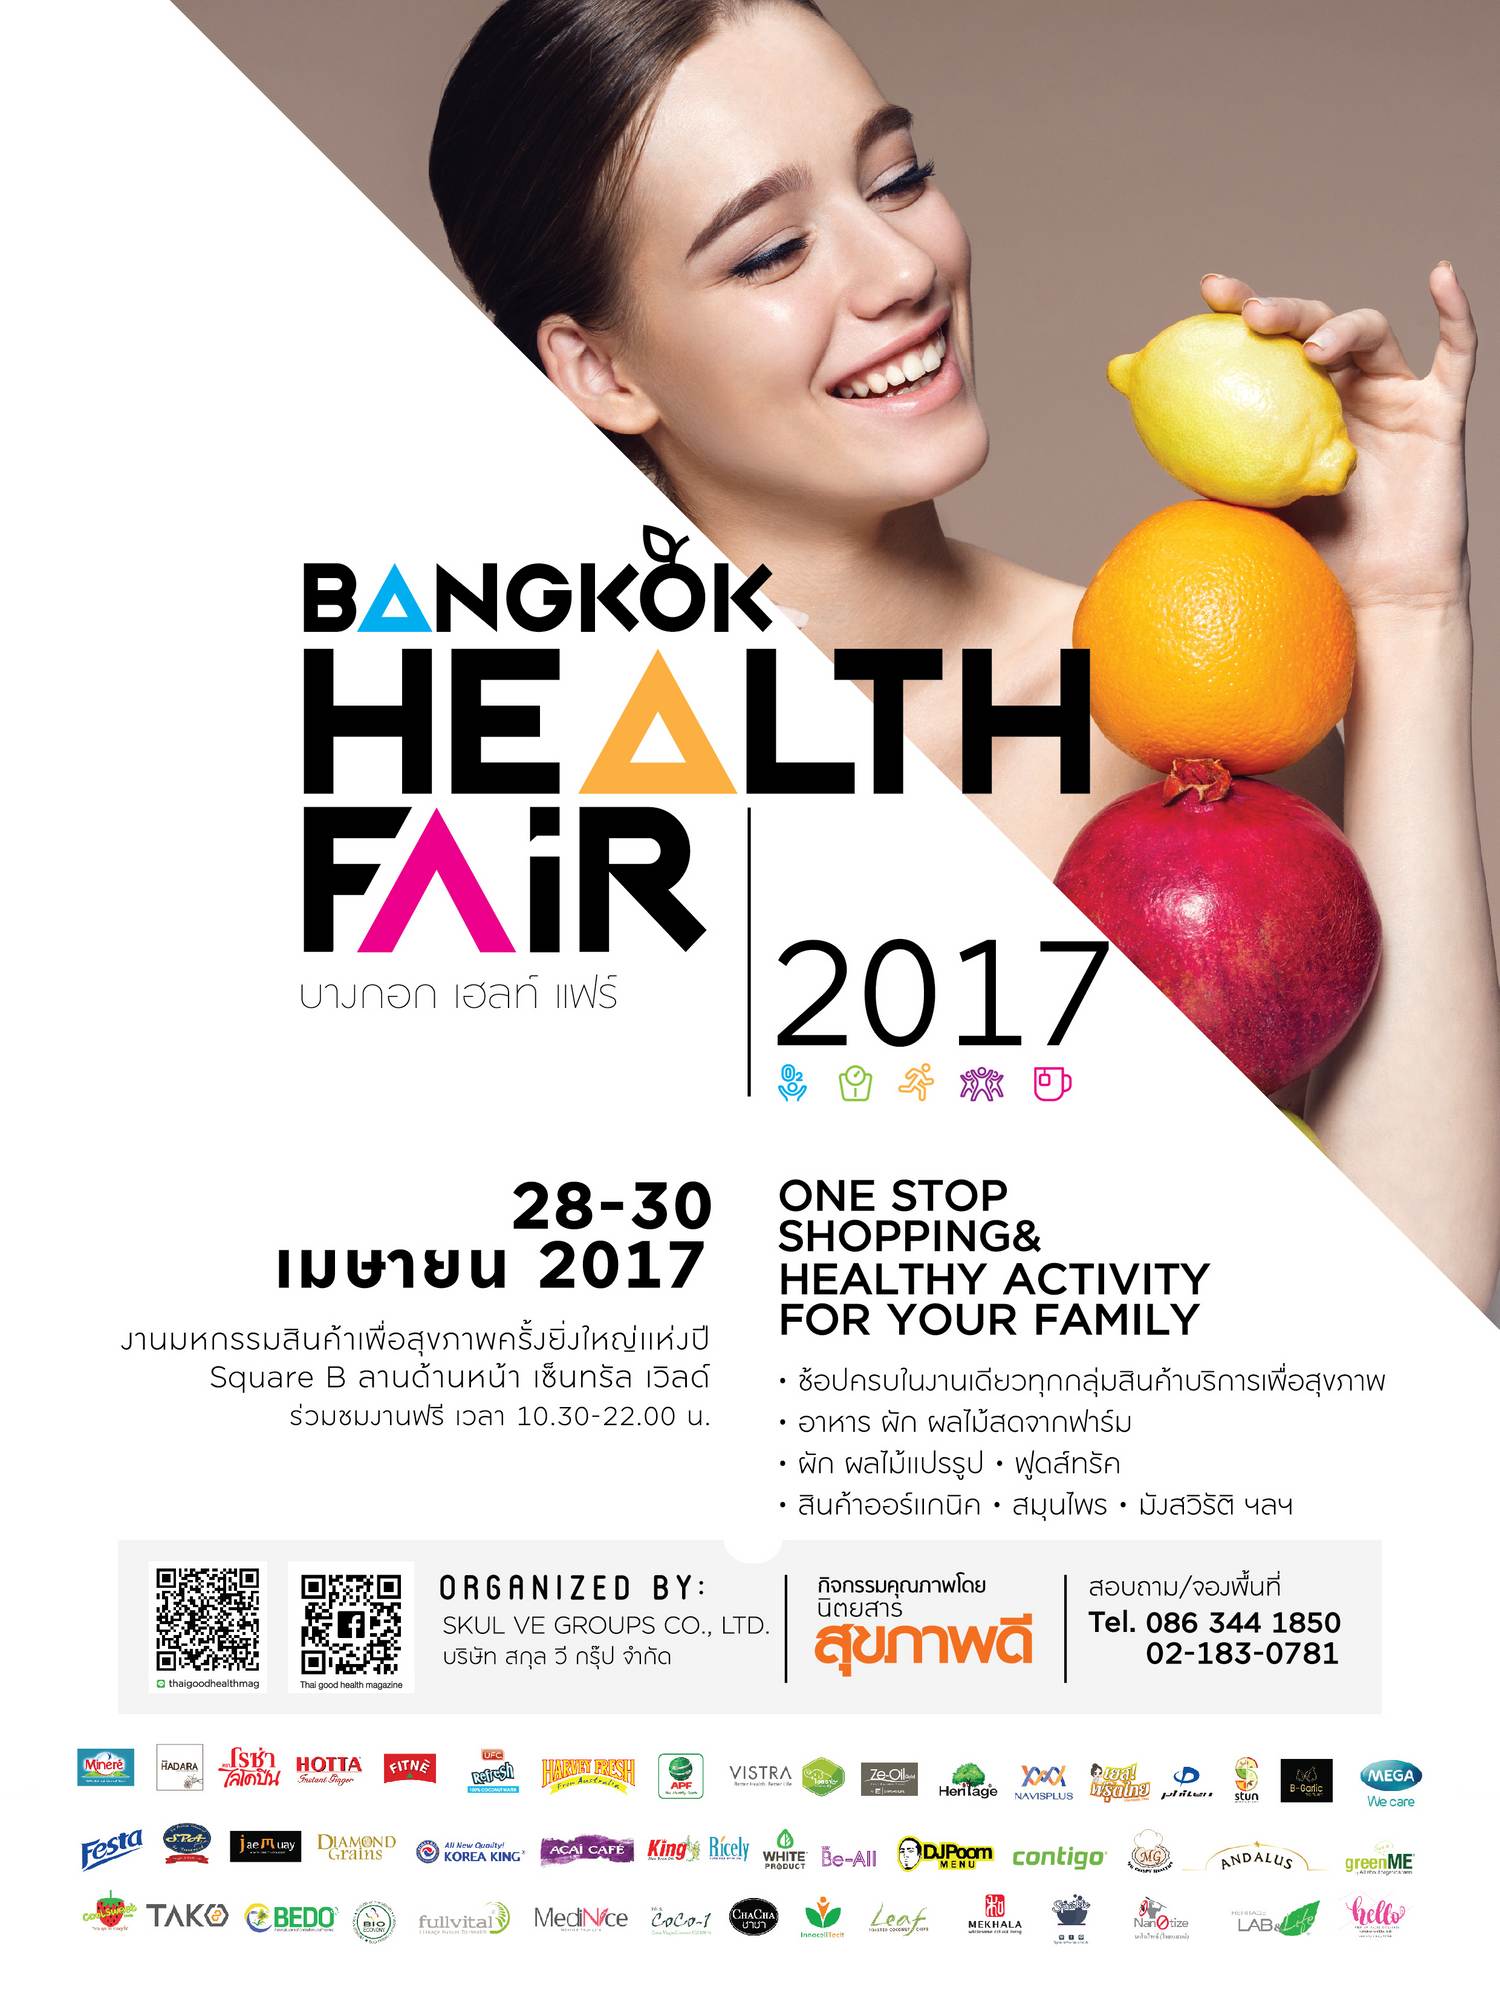 Bangkok Health Fair 2017